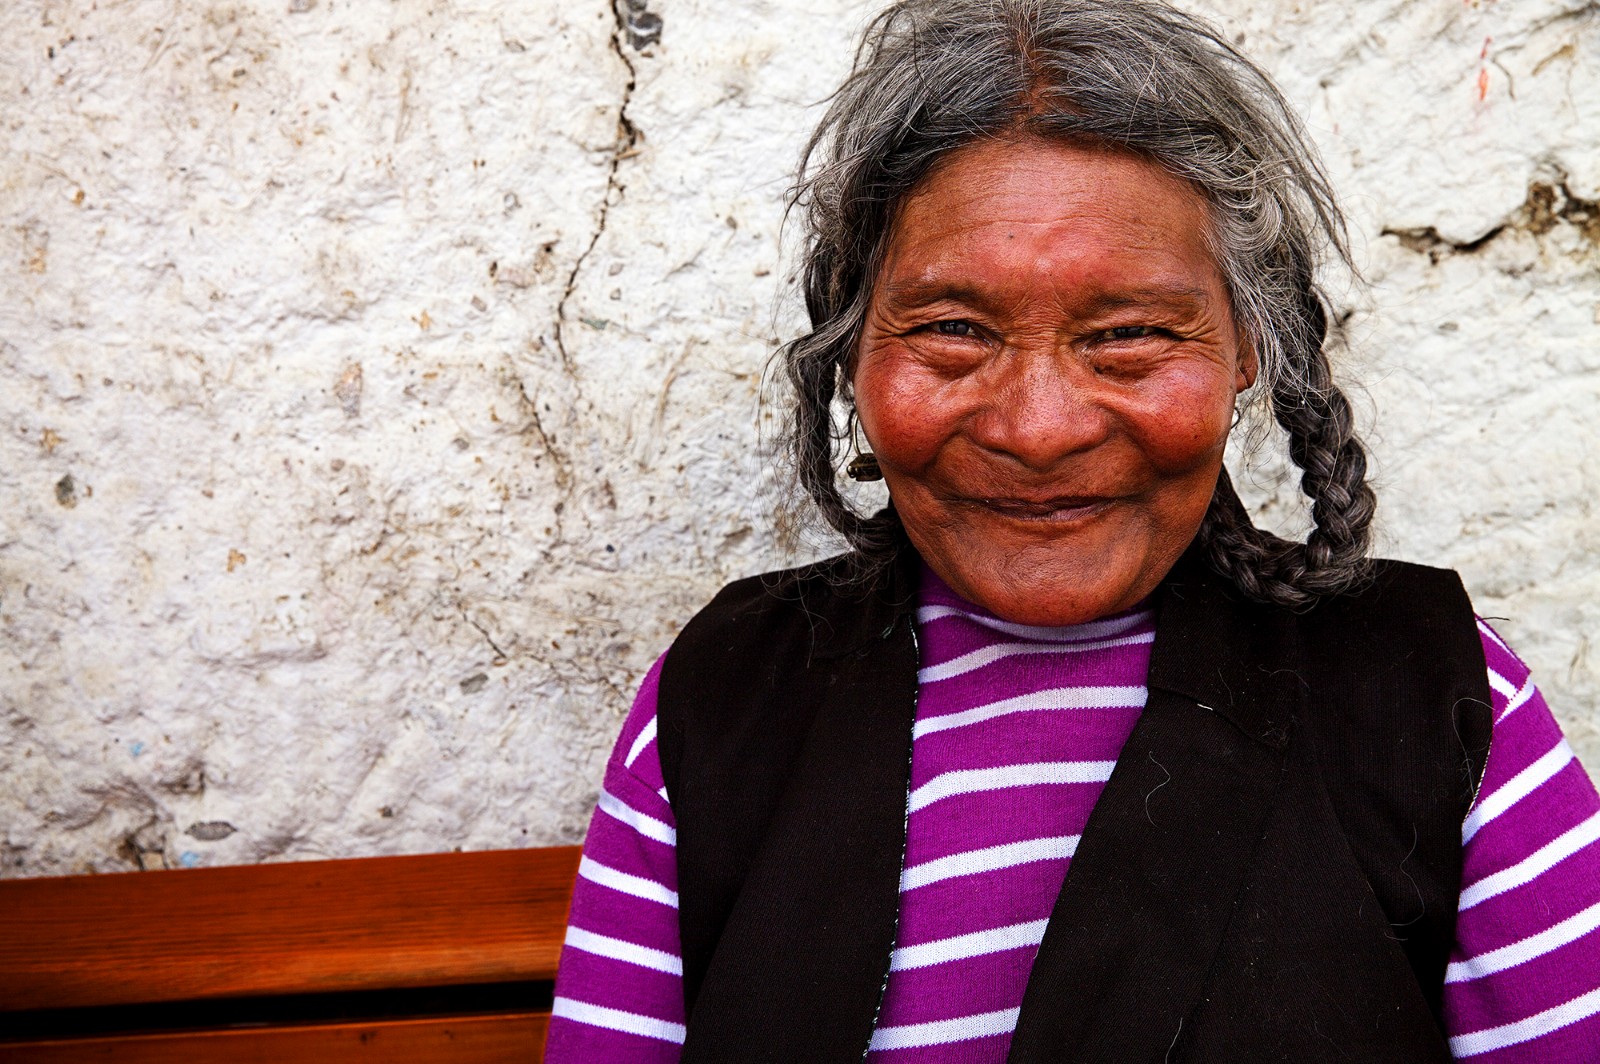 《藏民》            微笑带善黑赤的脸庞，高原红的笑颜，宁静淳朴，是藏民特有的标志。2015.08日喀则。.jpg